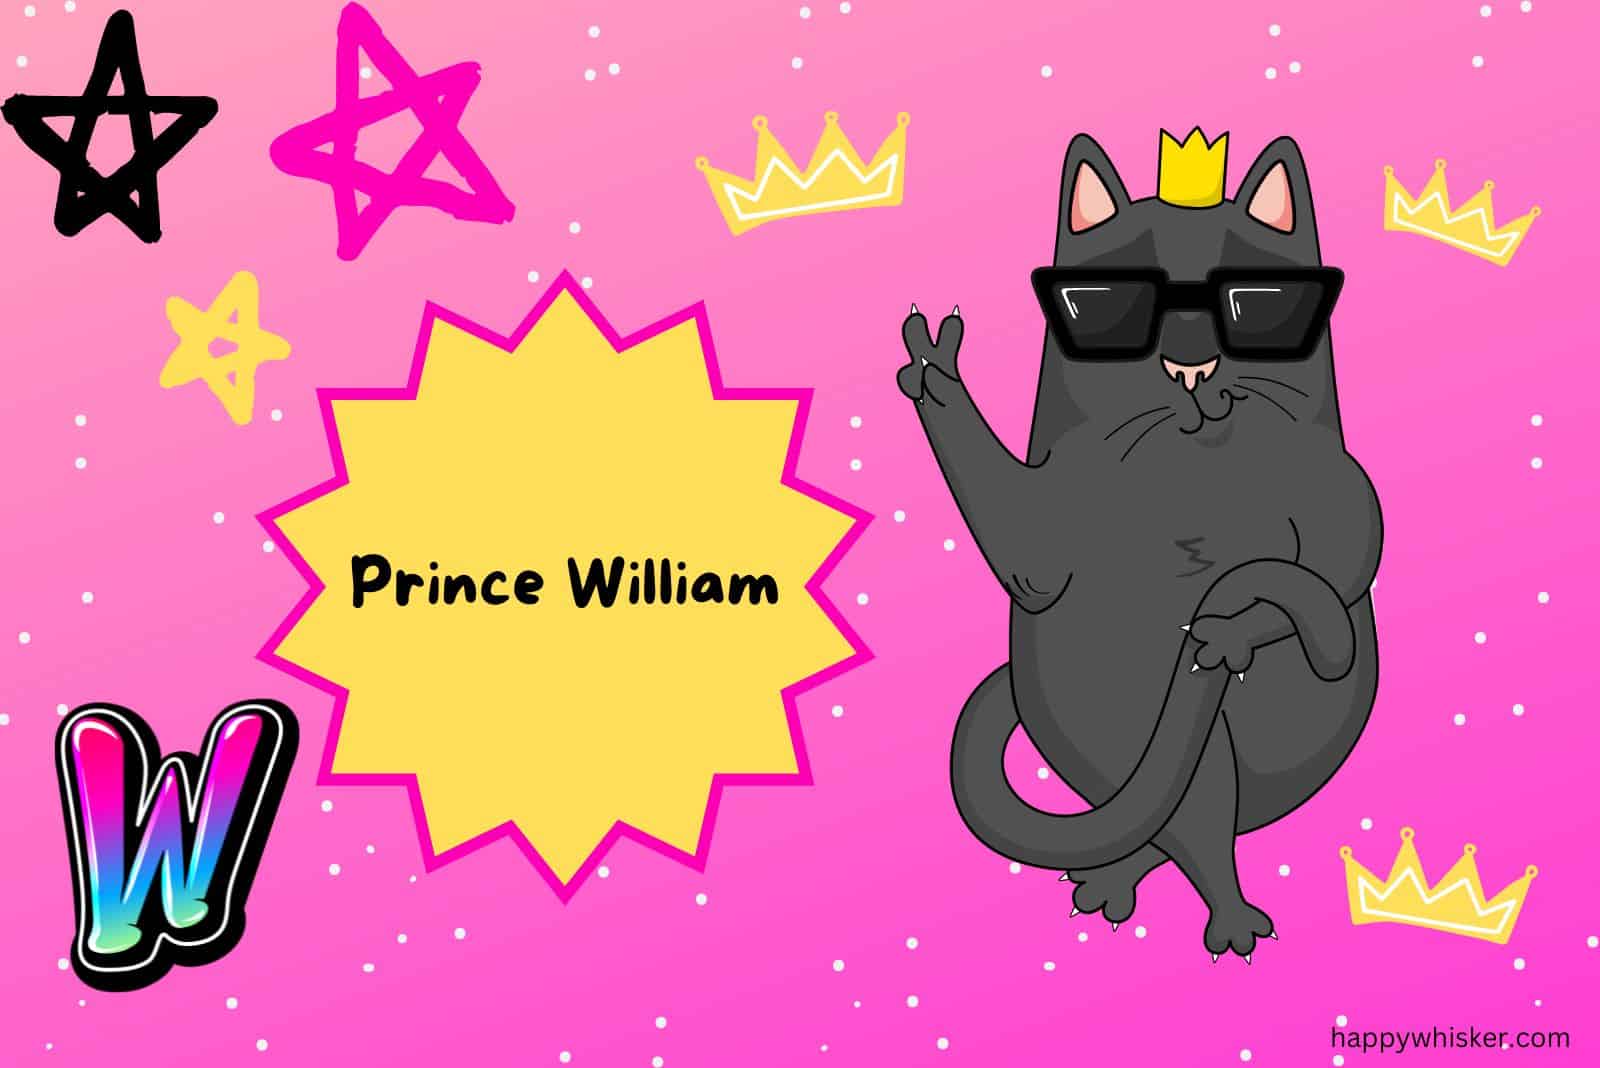 Prince William cat illustration